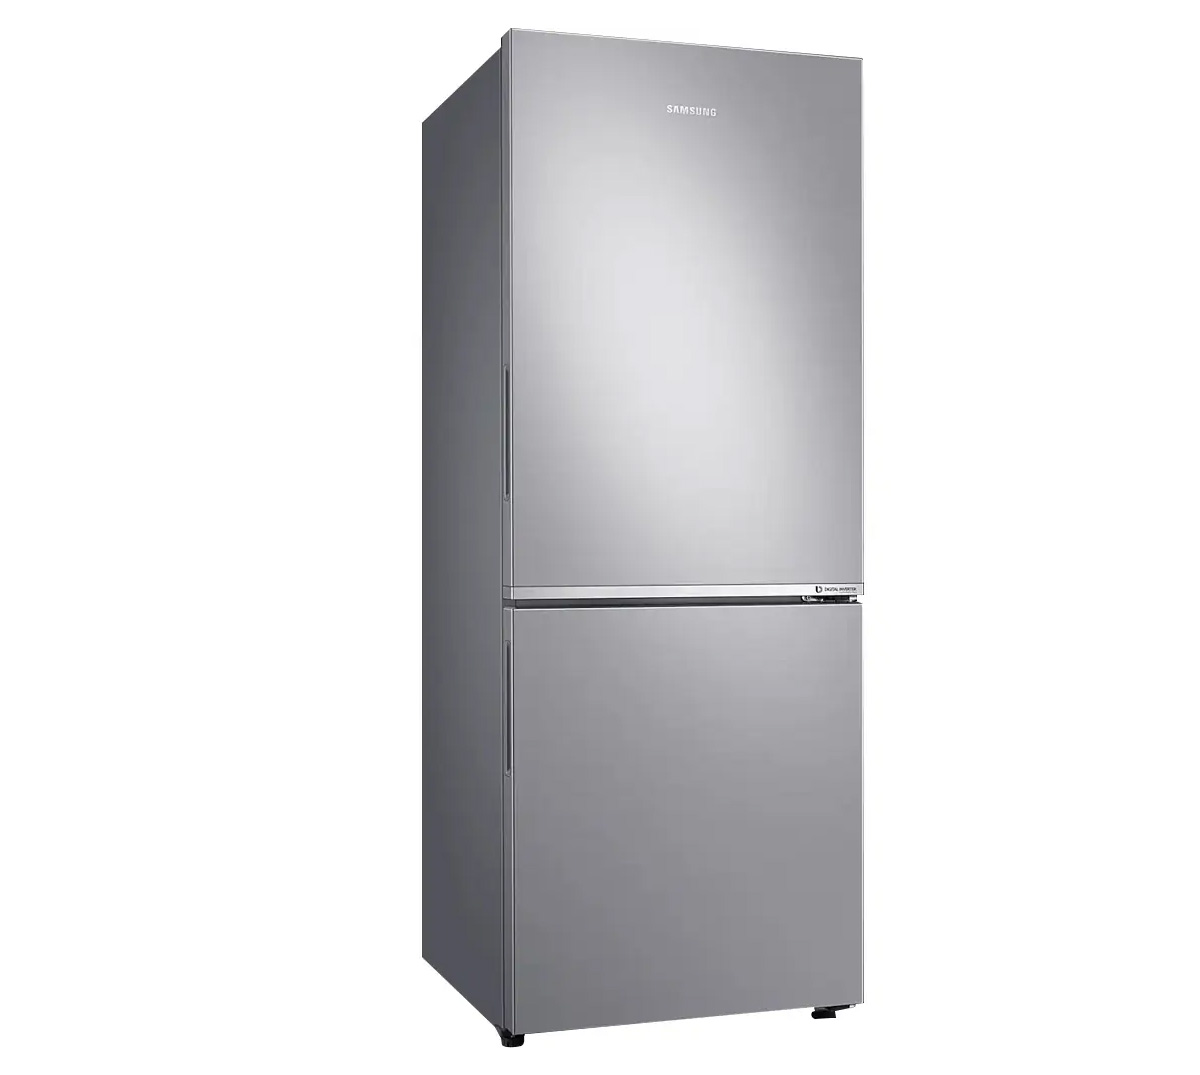 Tủ Lạnh Samsung Inverter 280 Lít RB27N4010S8 có kích thước lý tưởng